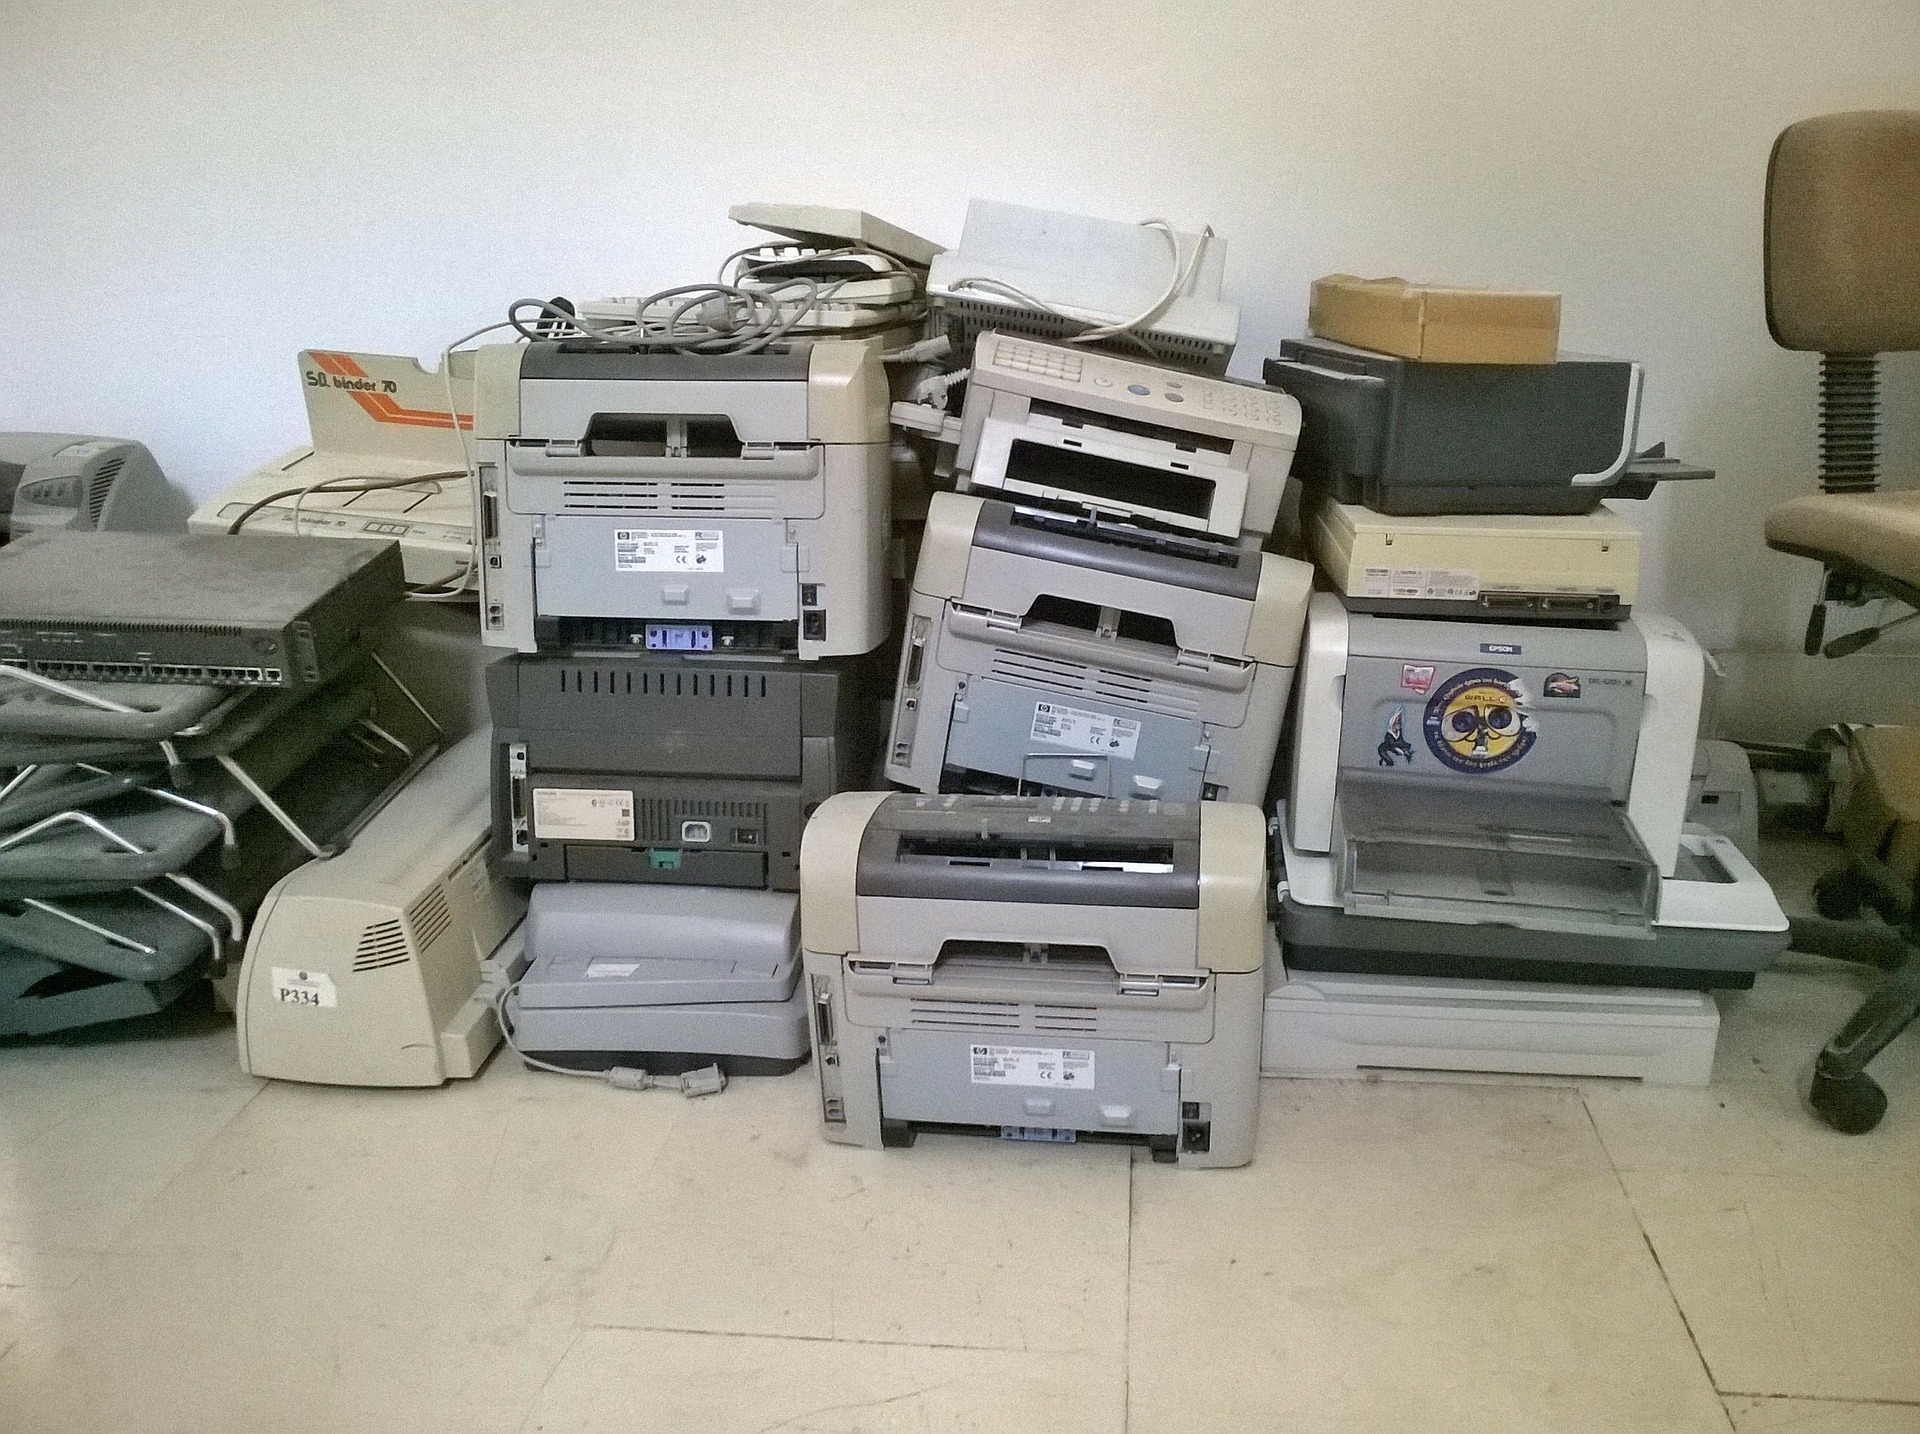 Historia de las impresoras desde sus inicios hasta el siglo XXI